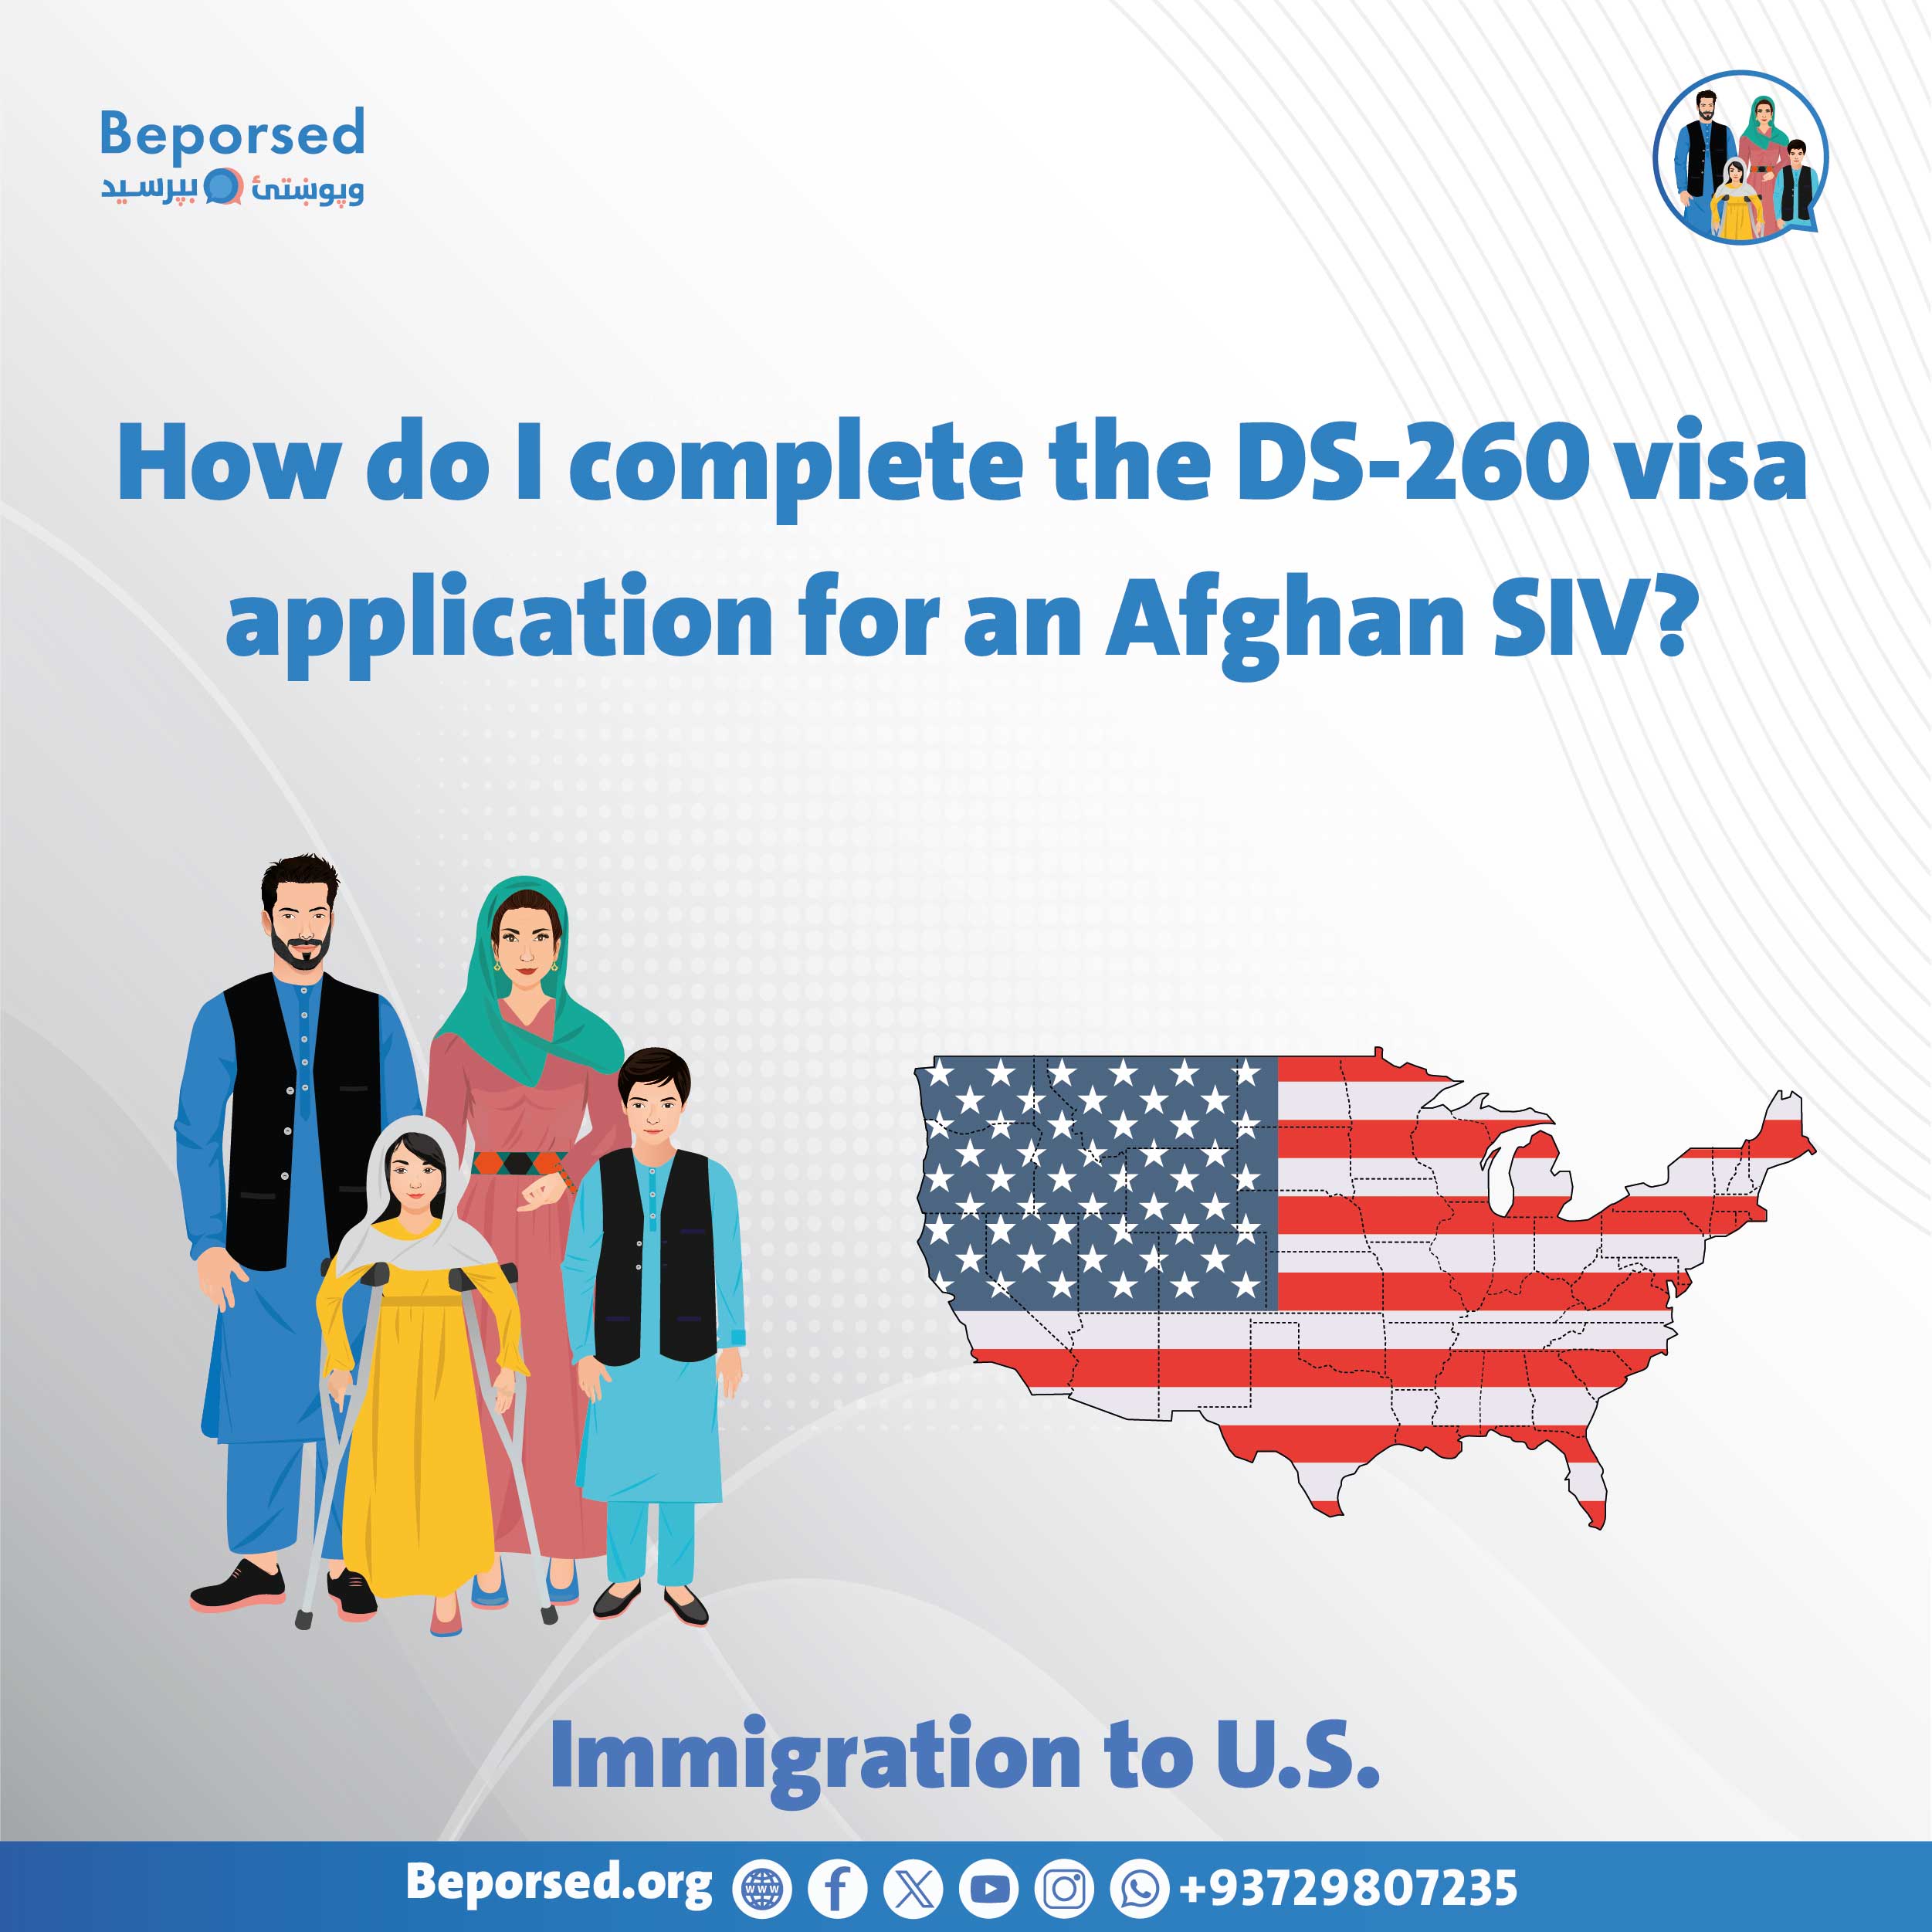 چگونه یک درخواست ویزای 260-DS را برای SIV یک افغان تکمیل نمایم؟-03.jpg